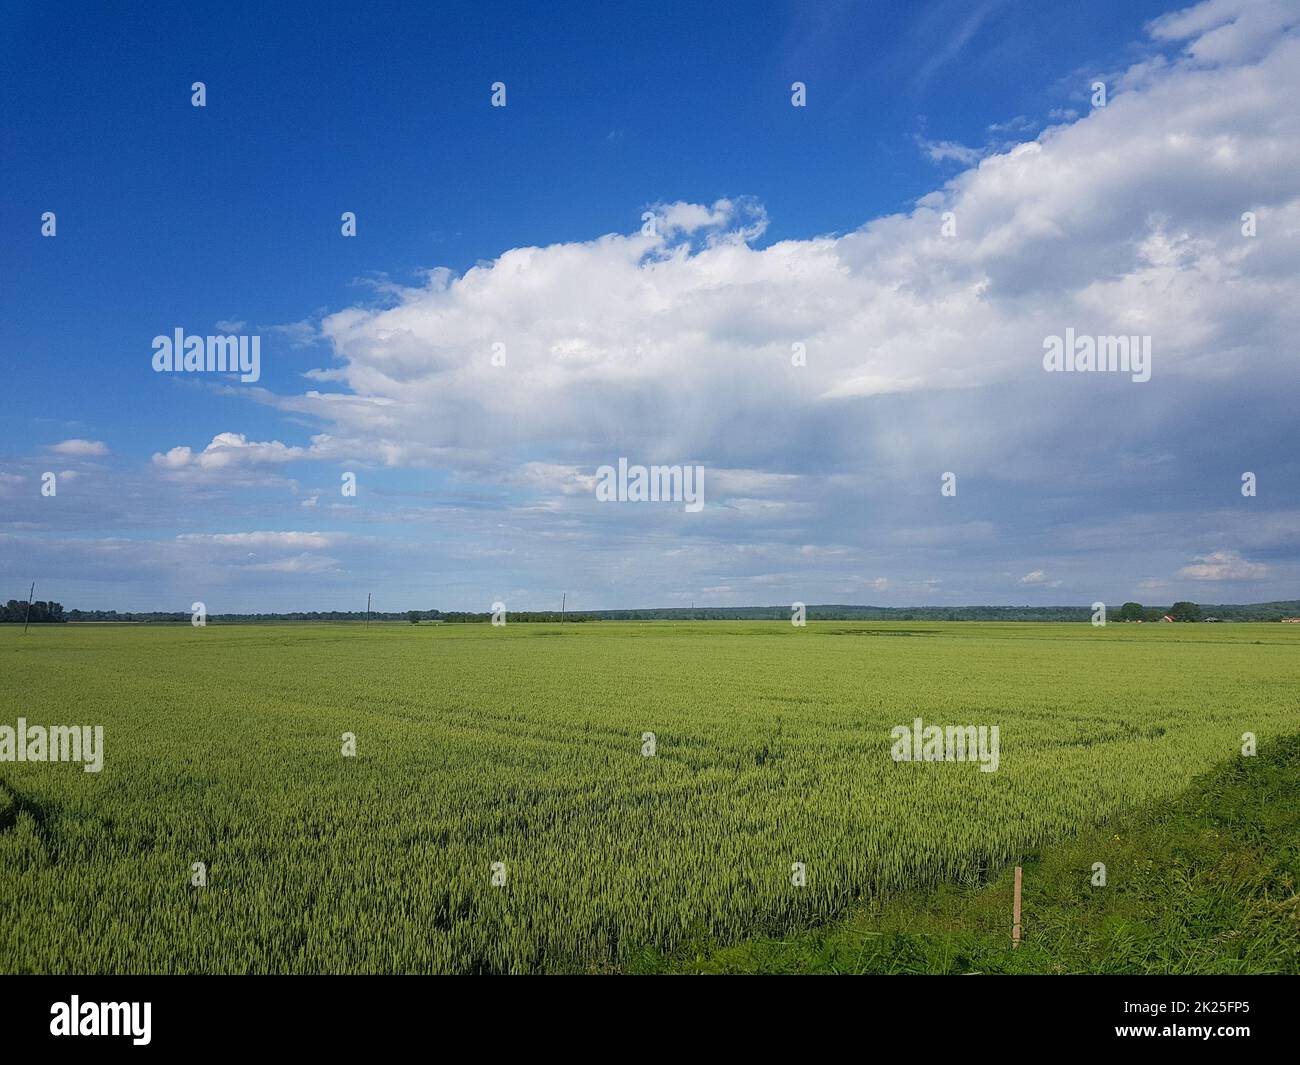 Schöne Landschaft von einem grünen Gras Land unter einem bewölkten Himmel Stockfoto